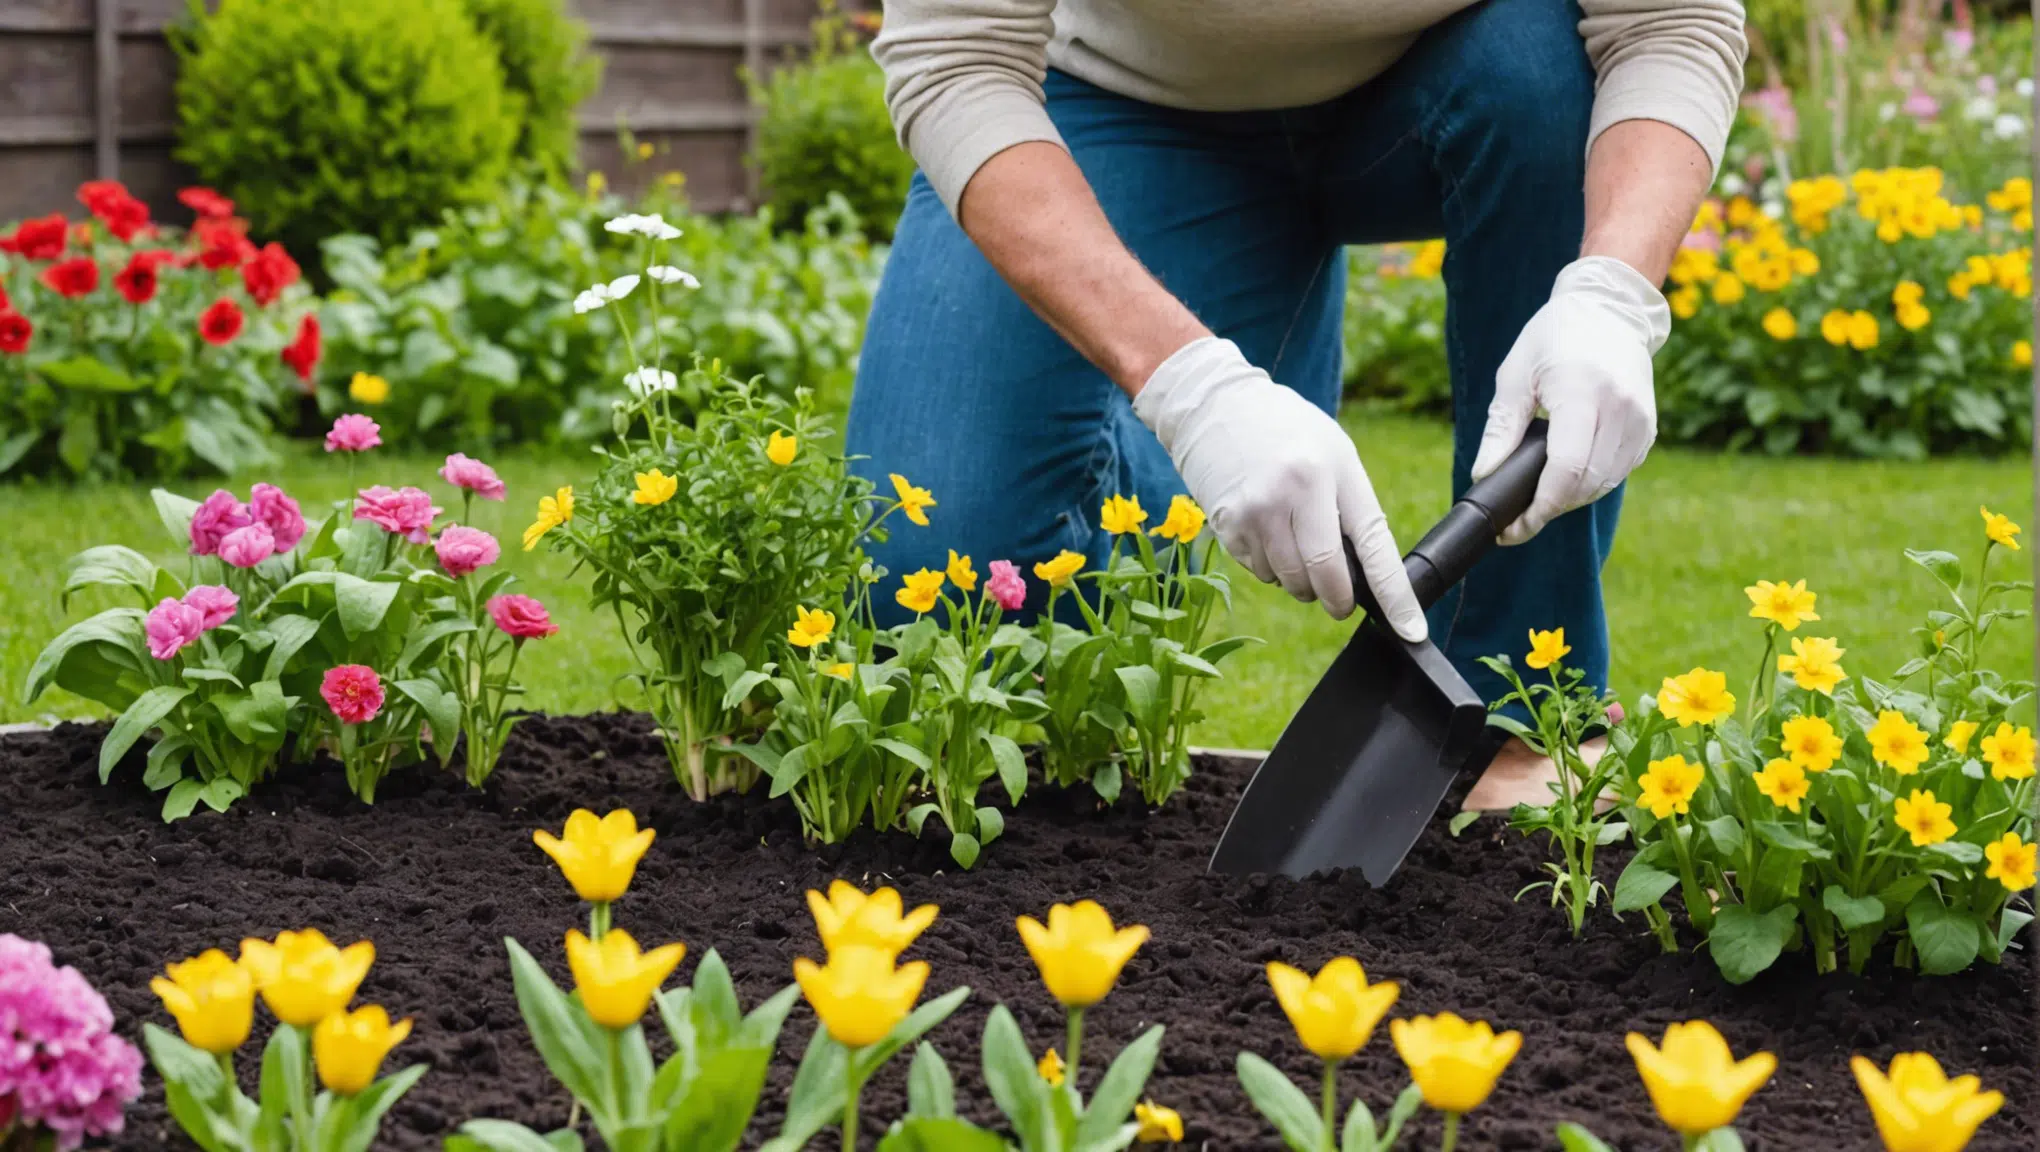 découvrez les 9 gestes essentiels pour faire fleurir votre jardin en avril et récolter une abondance de fleurs et de légumes cette année.